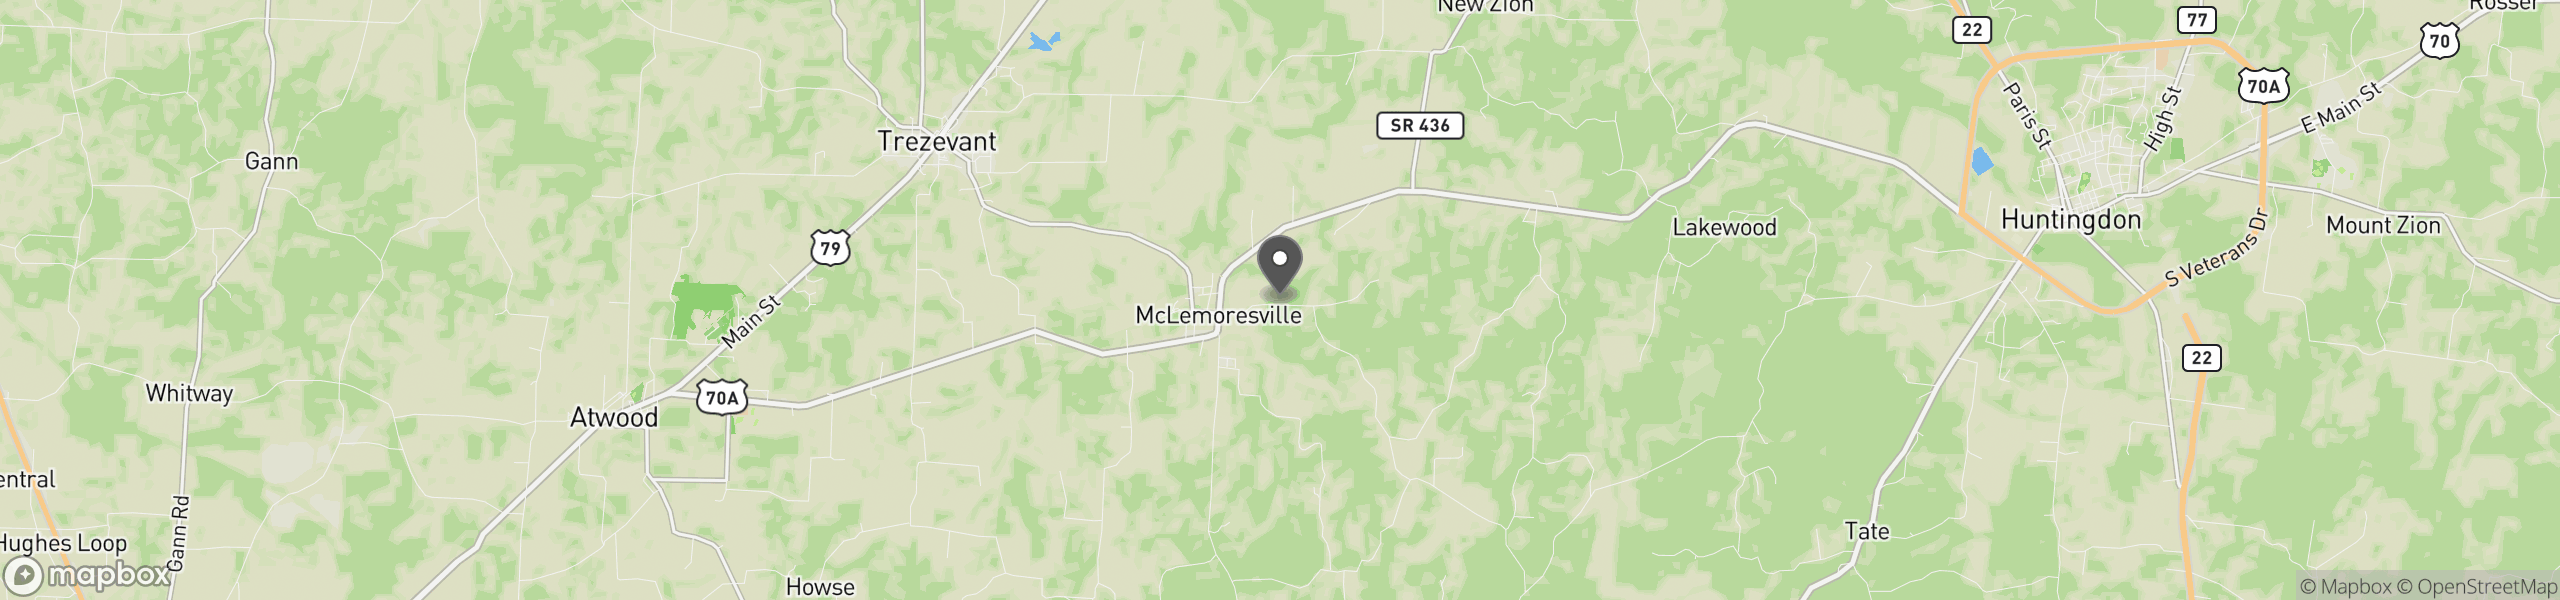 Mc Lemoresville, TN 38235